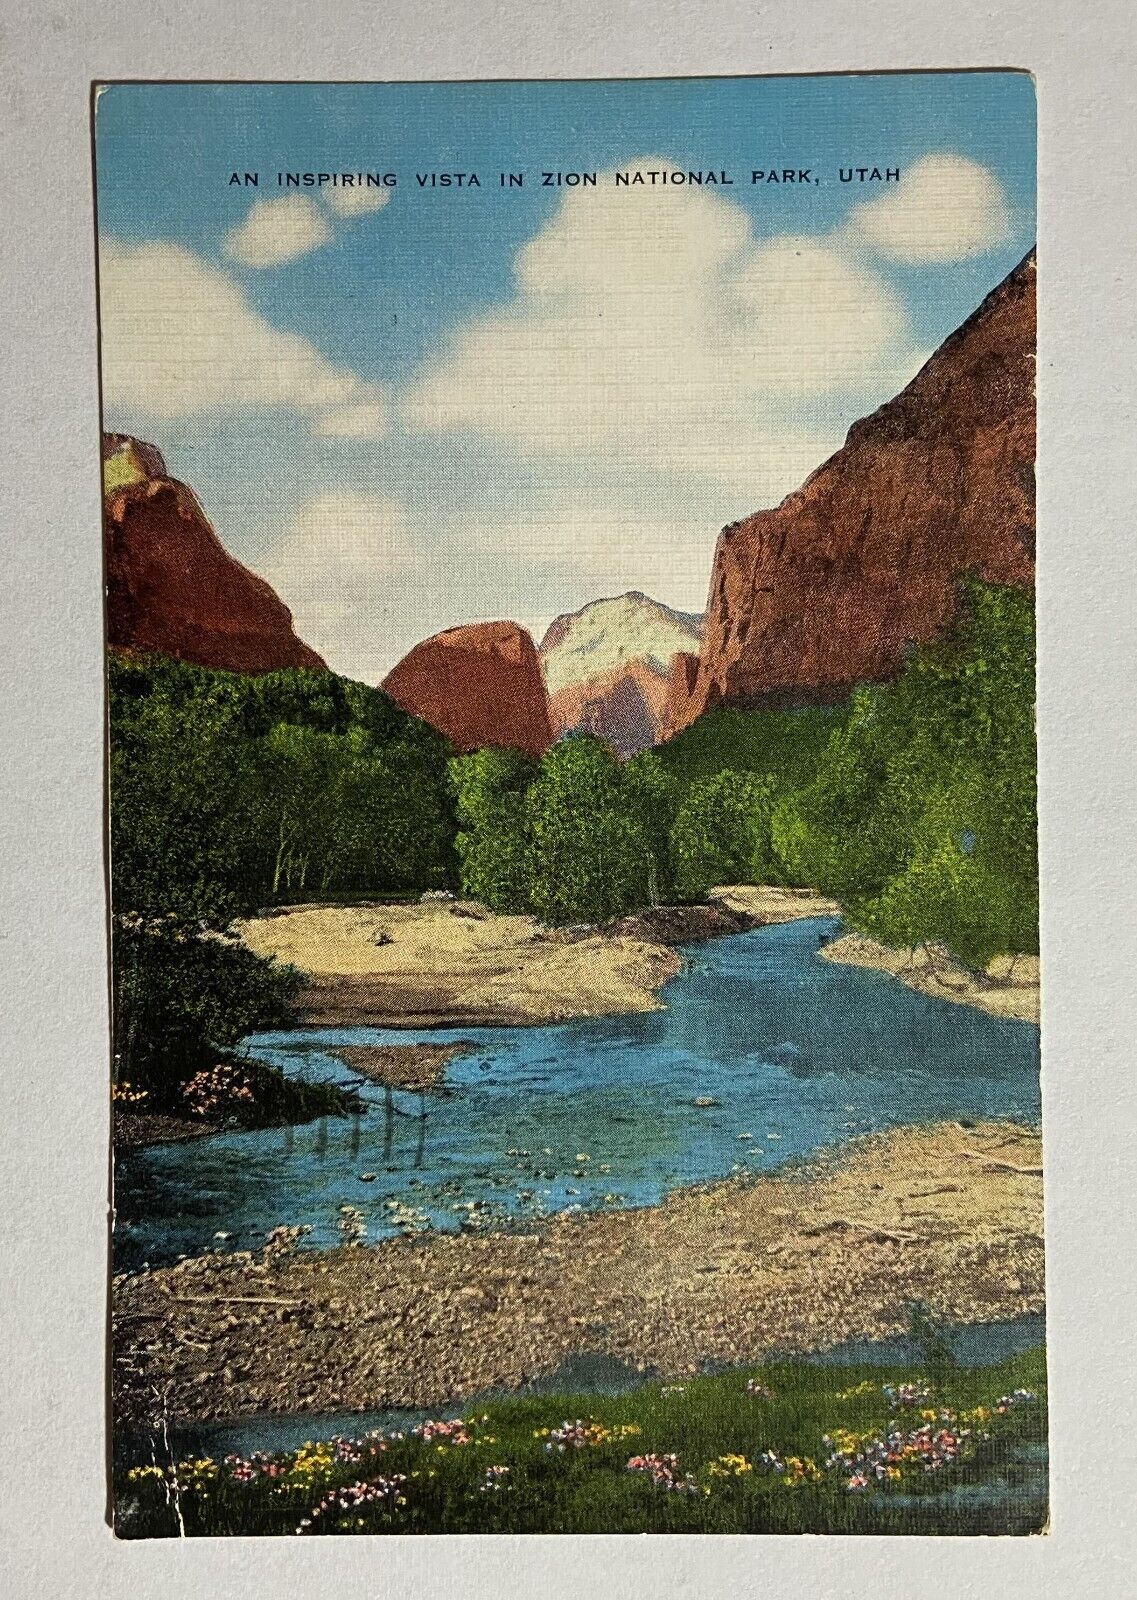 1956 Vintage Postcard Zion National Park River Heber Utah Postal Postmark Stamp